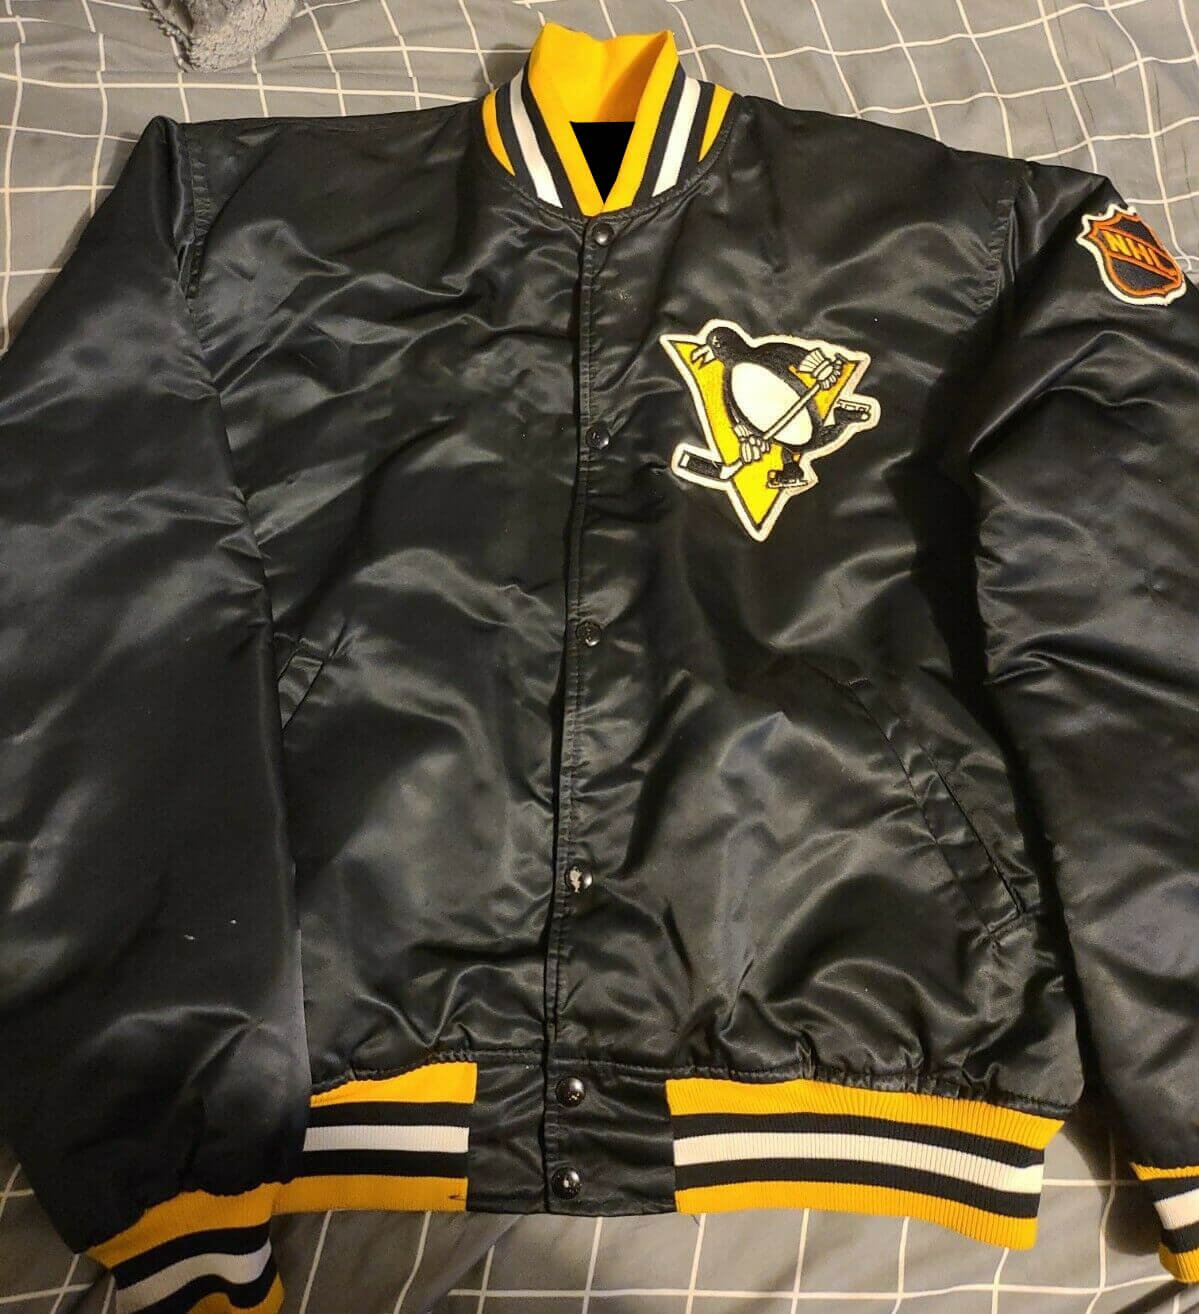 Maker of Jacket Black Leather Jackets Vintage Pittsburgh Penguins